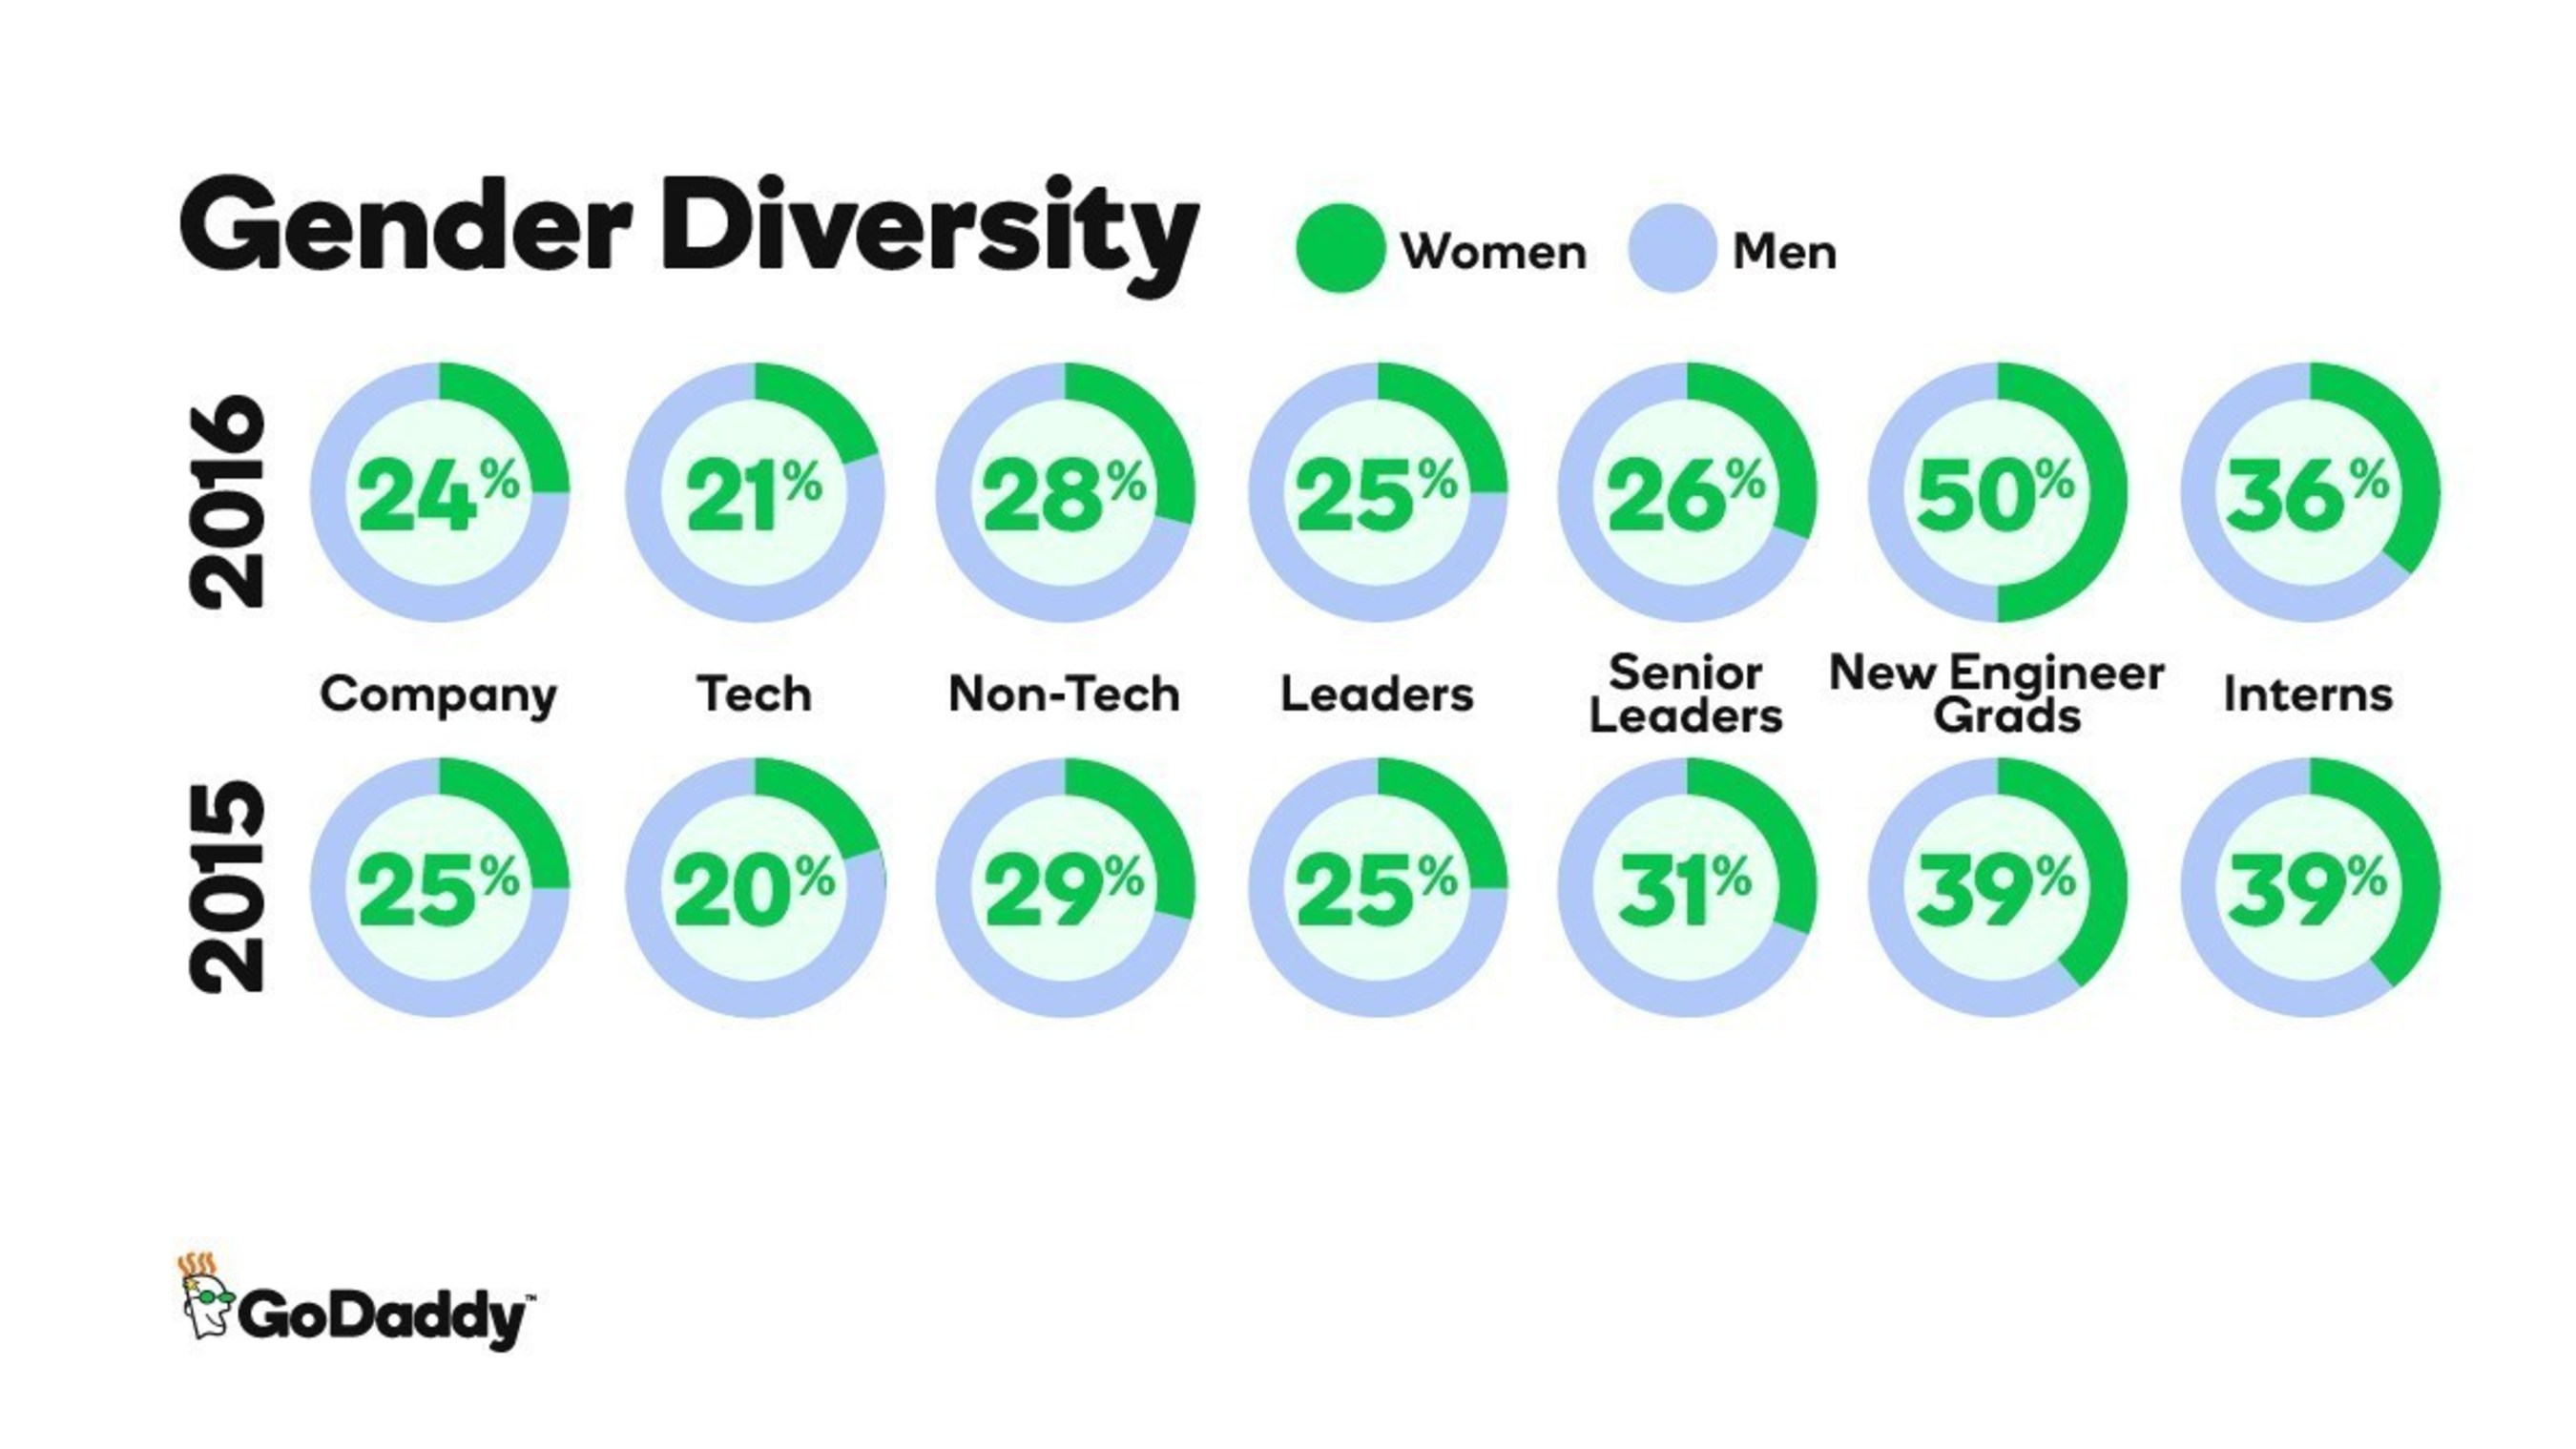 GoDaddy 2016 Gender Diversity Data